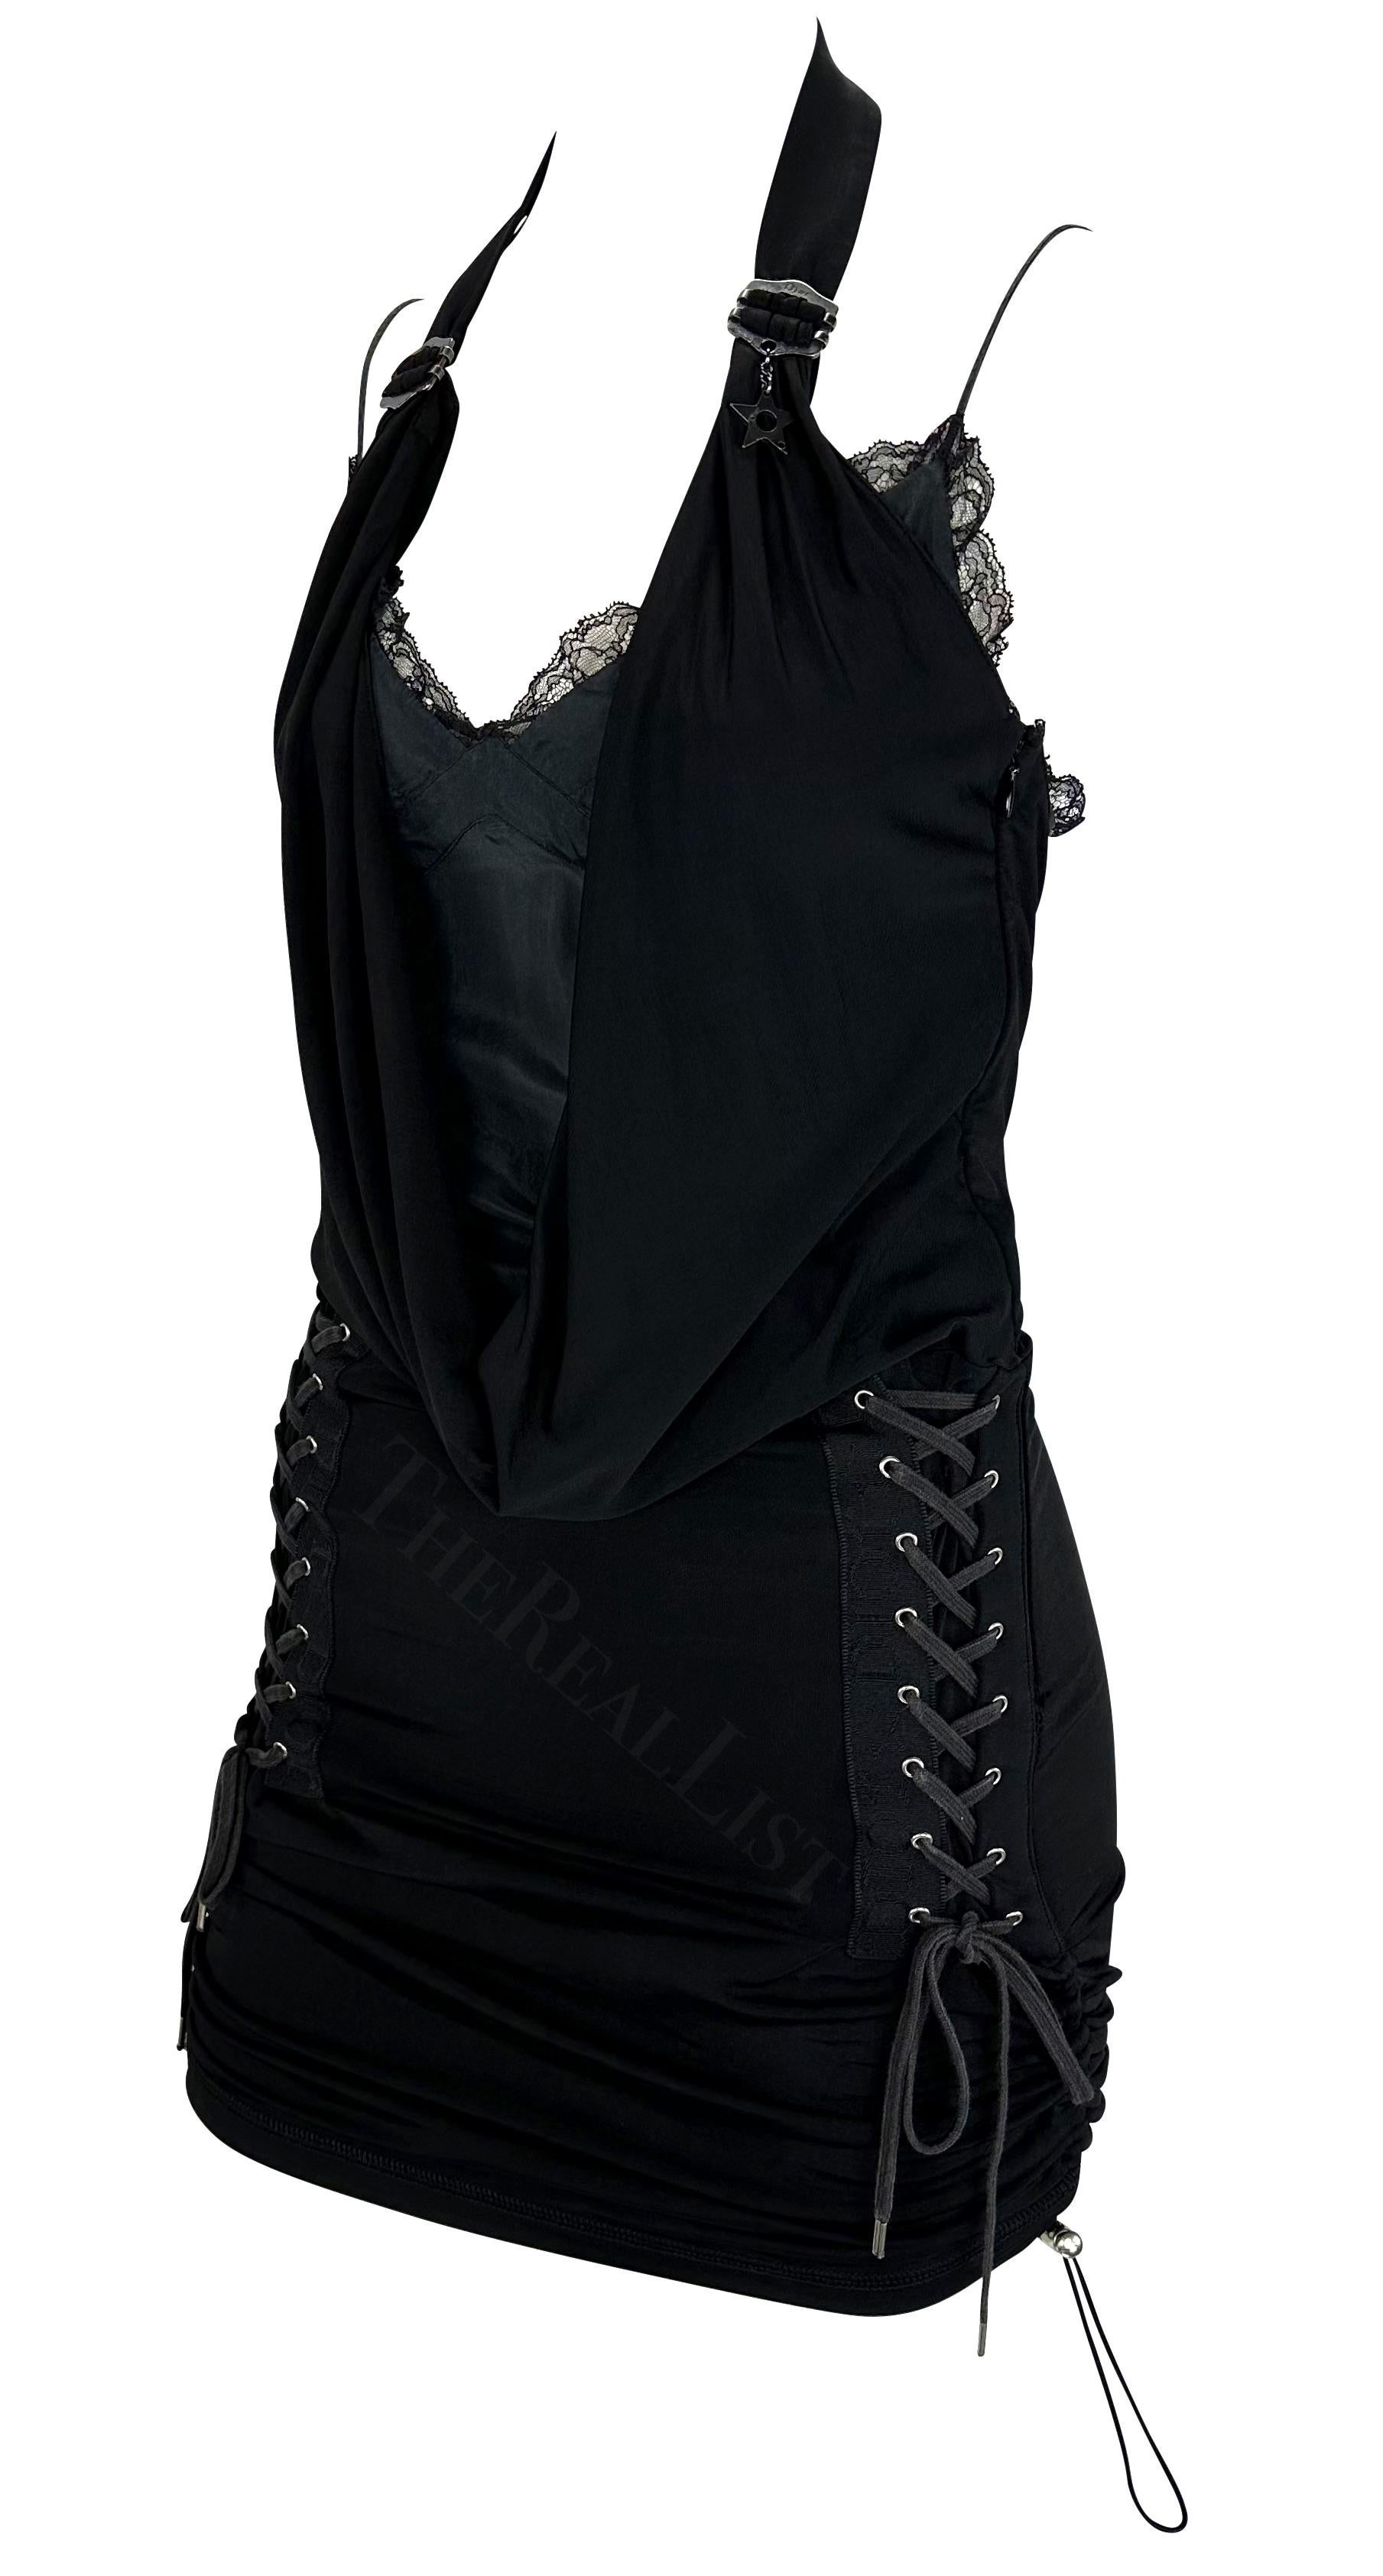 Présentation d'une fabuleuse mini robe noire Christian Dior, dessinée par John Galliano. Issue de la Collection S&Up 2004, cette robe sexy est dotée d'un dos nu qui se drape dans un col bénitier, d'accents de dentelle de chaque côté de la jupe et